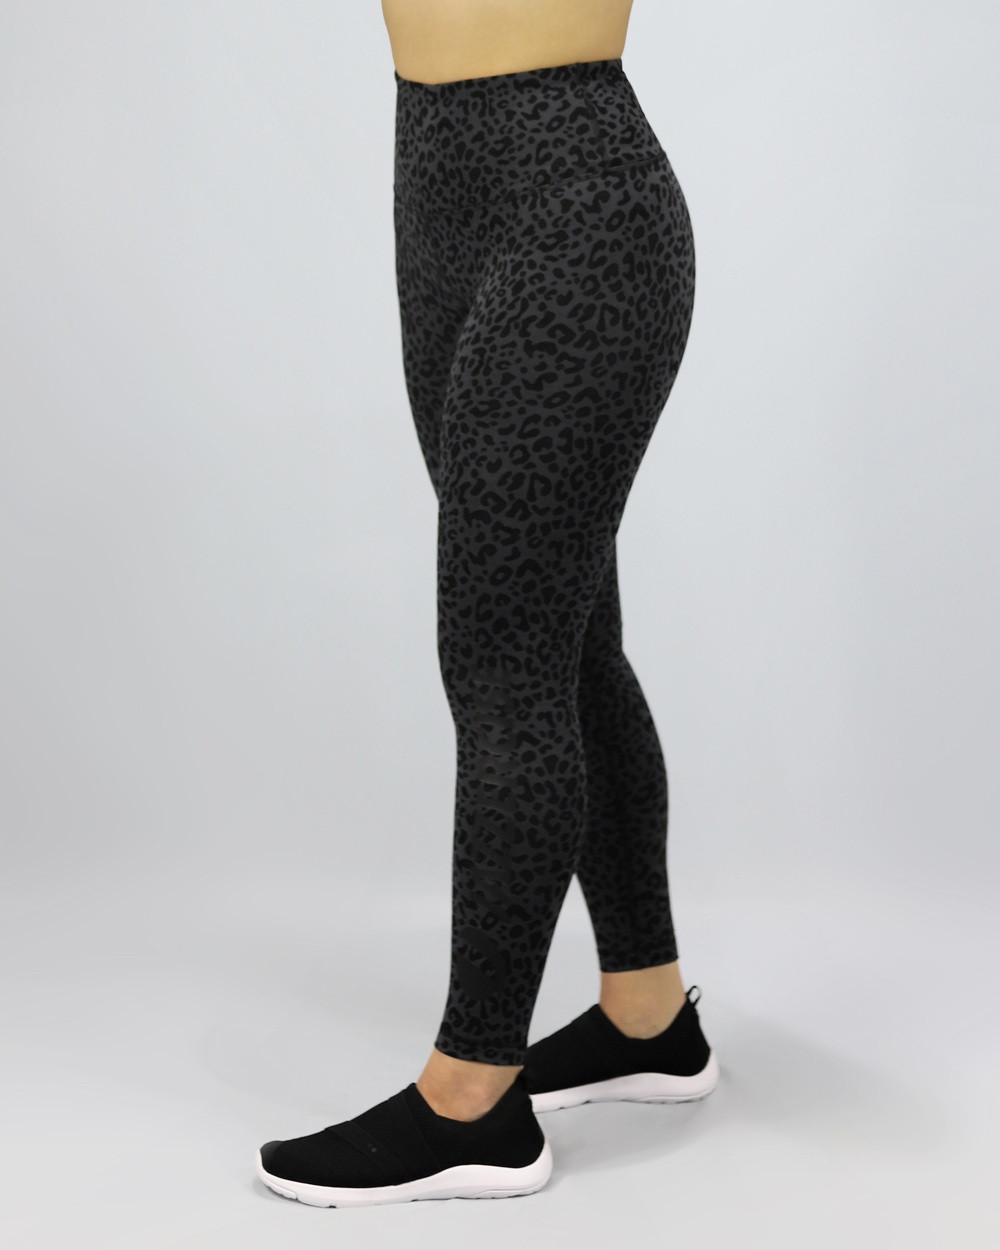 90 Degree by Reflex Leopard Print Black Gray Yoga Pants Size L